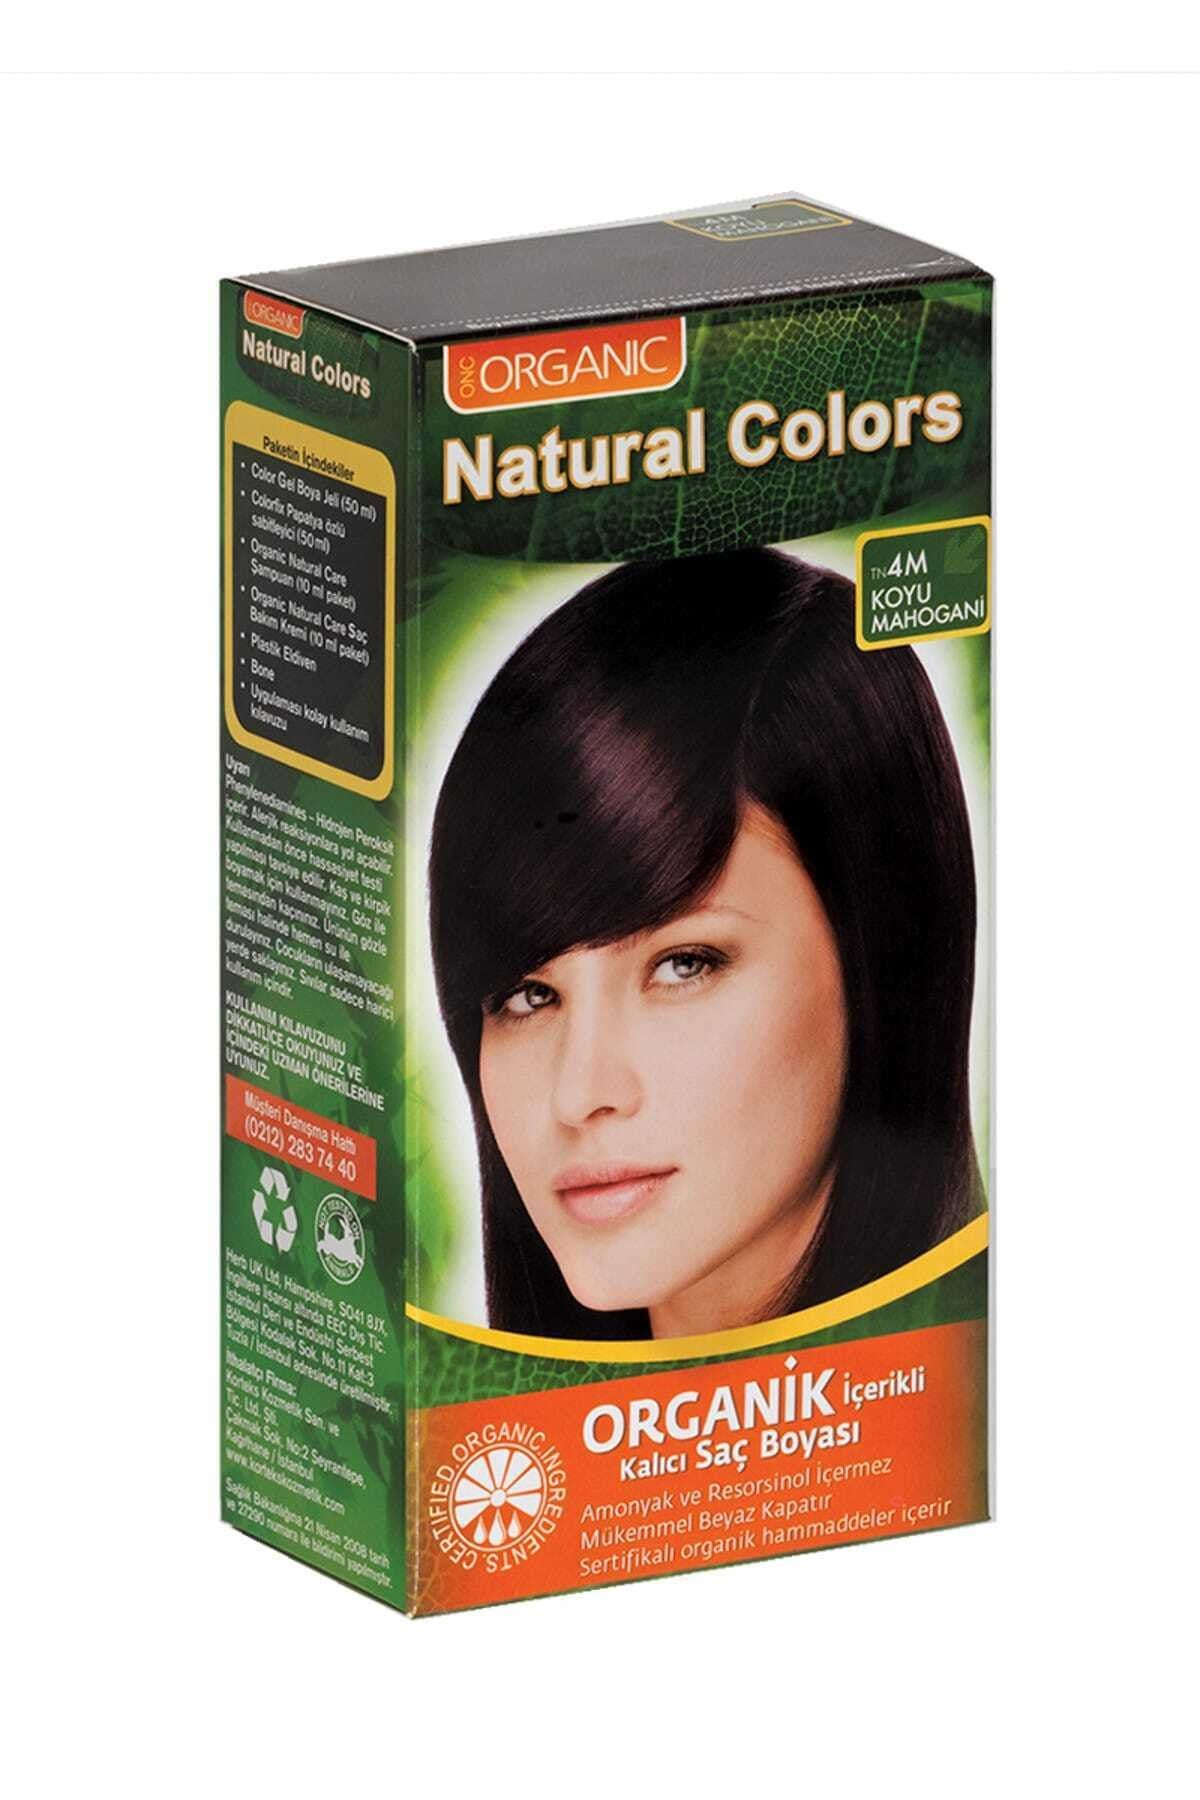 Organic Natural Colors 4M Koyu Mahogani Organik Saç Boyası 8681085503055